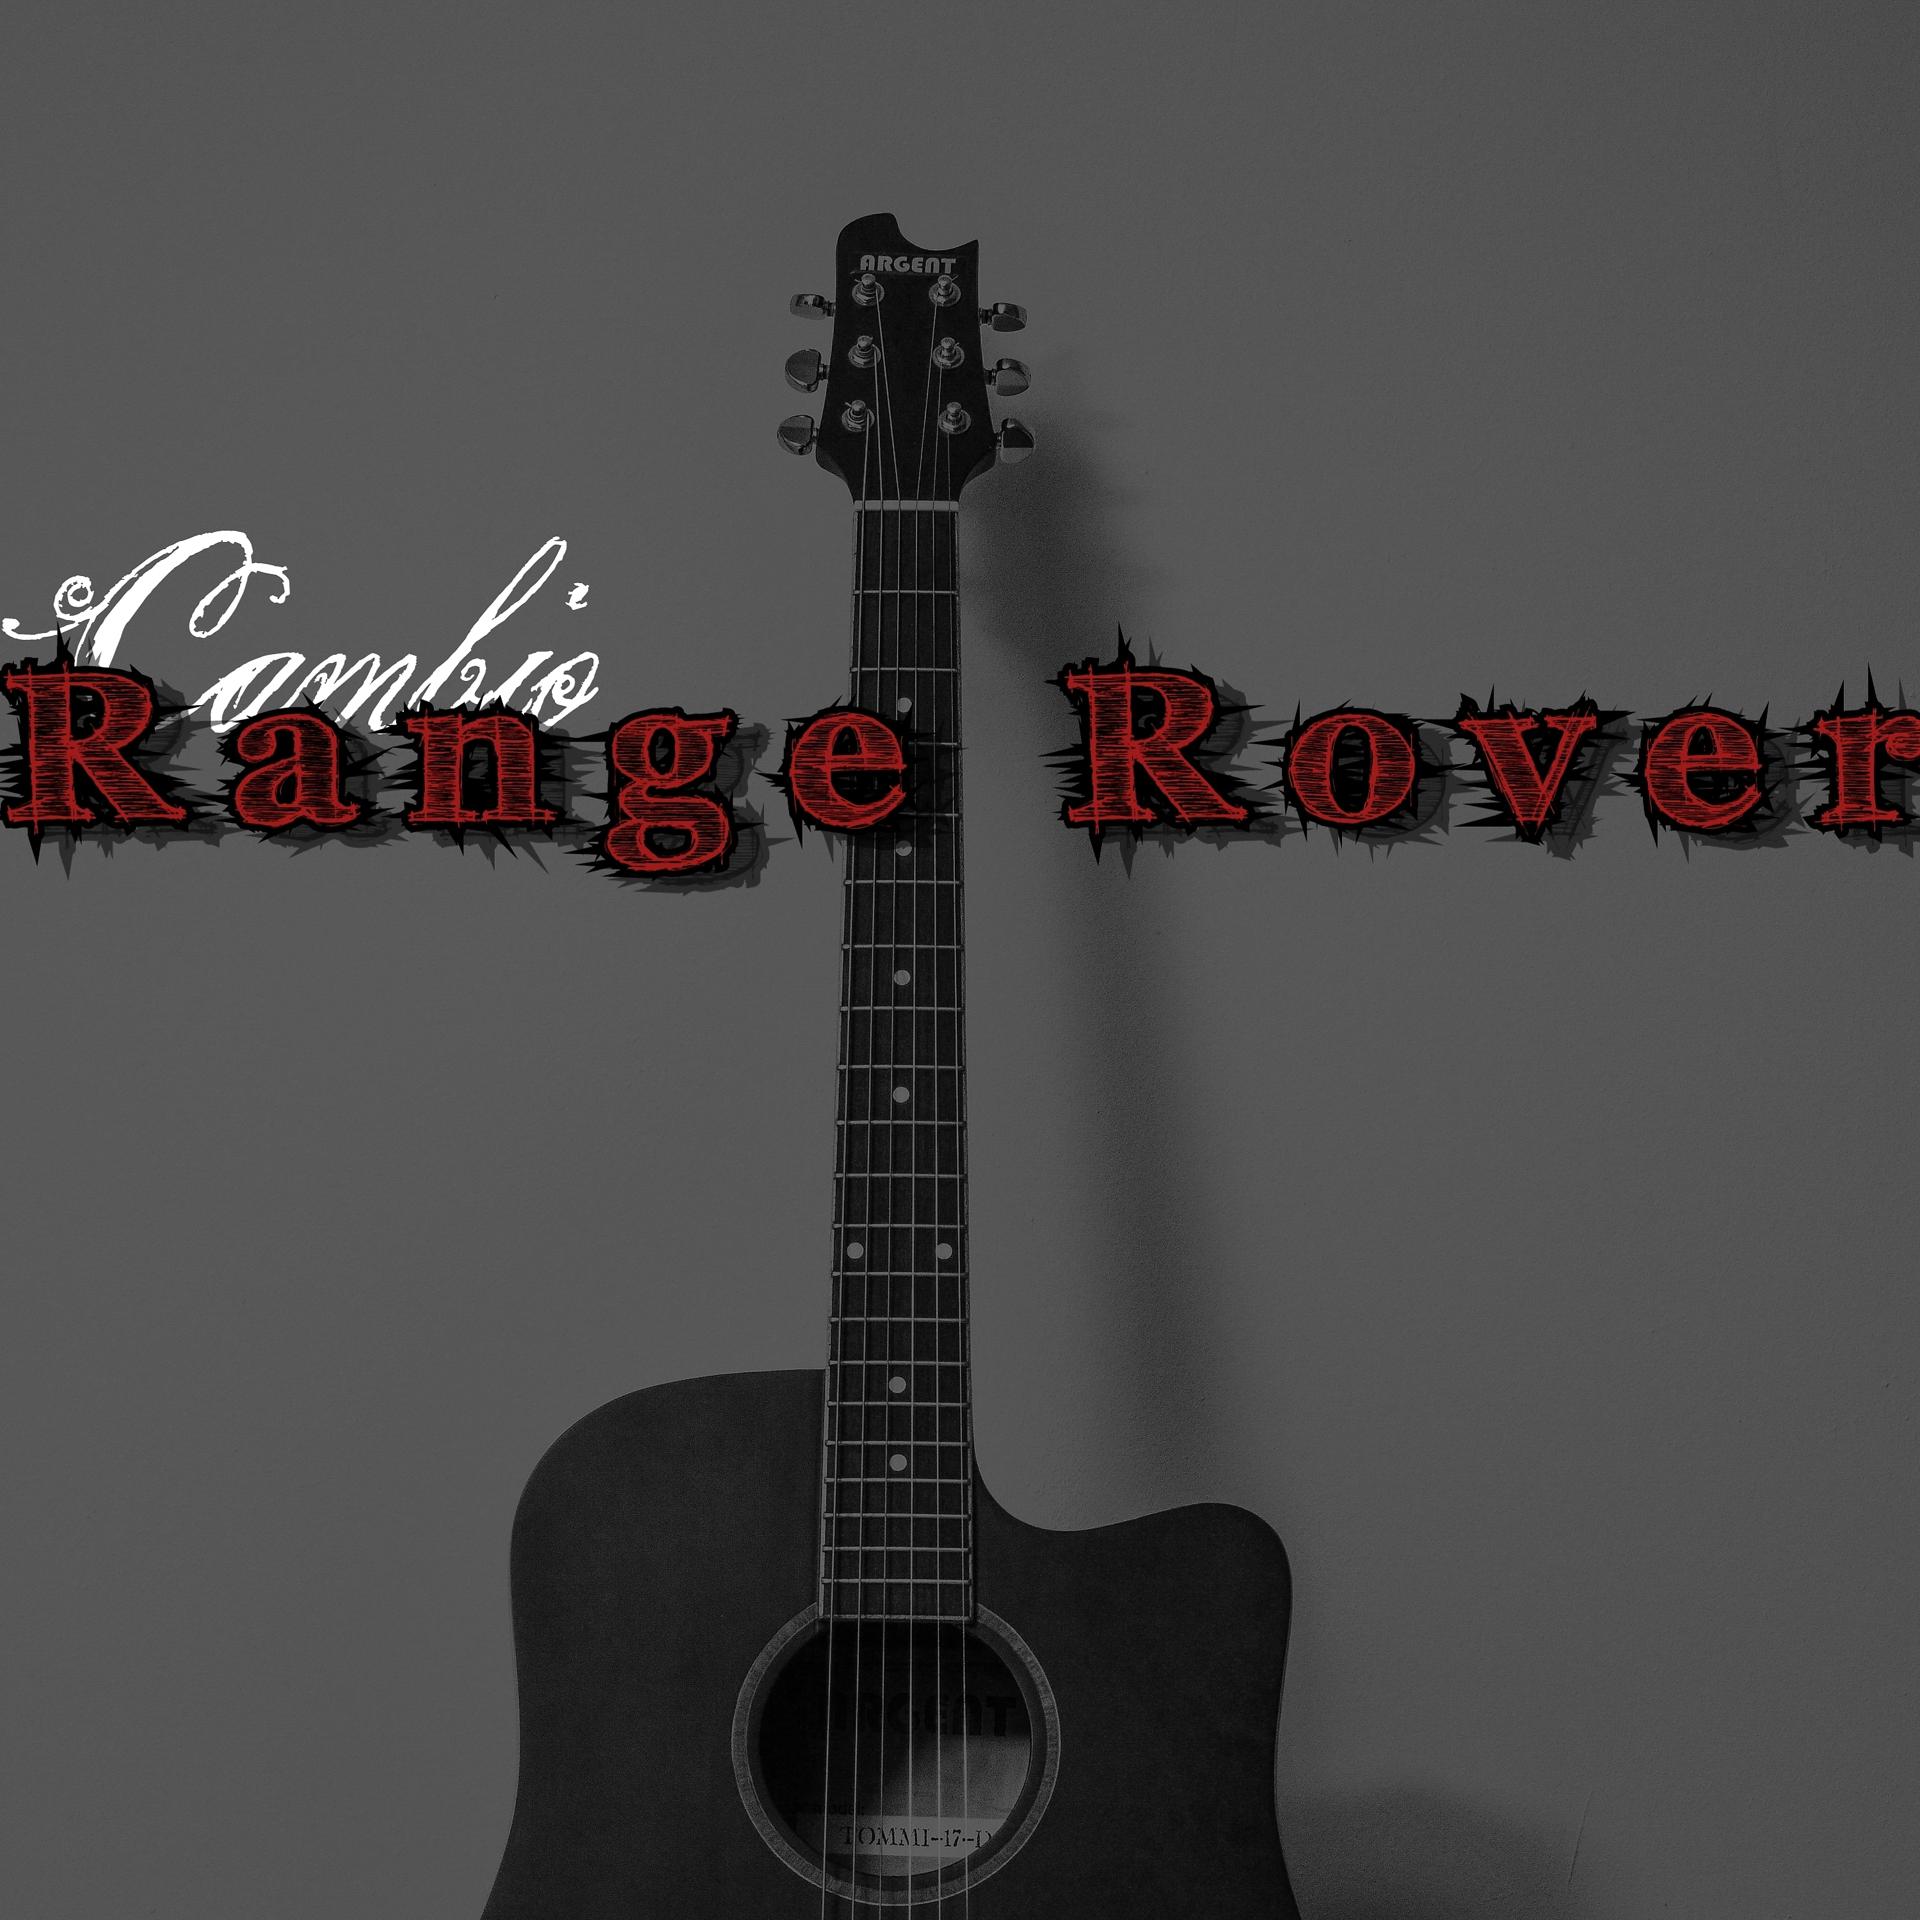 Постер альбома Range Rover